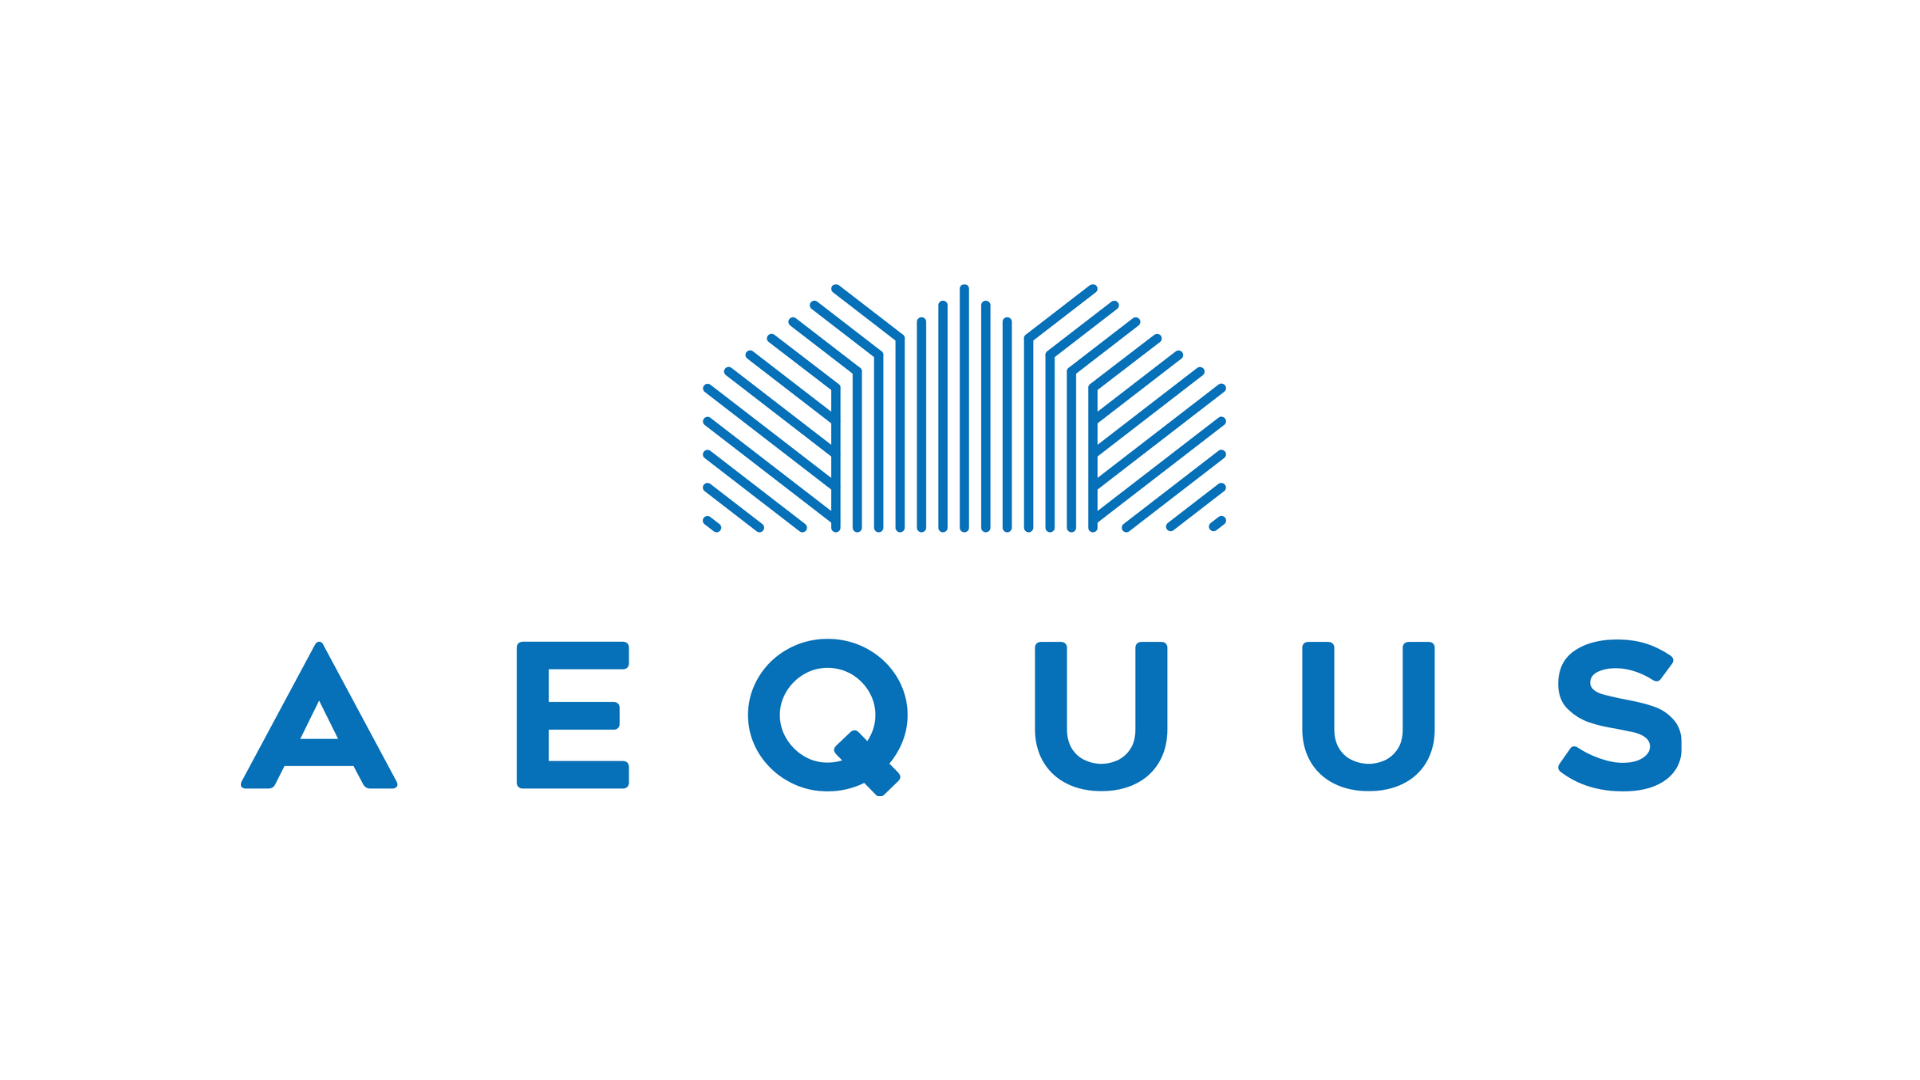 Aequus logo.